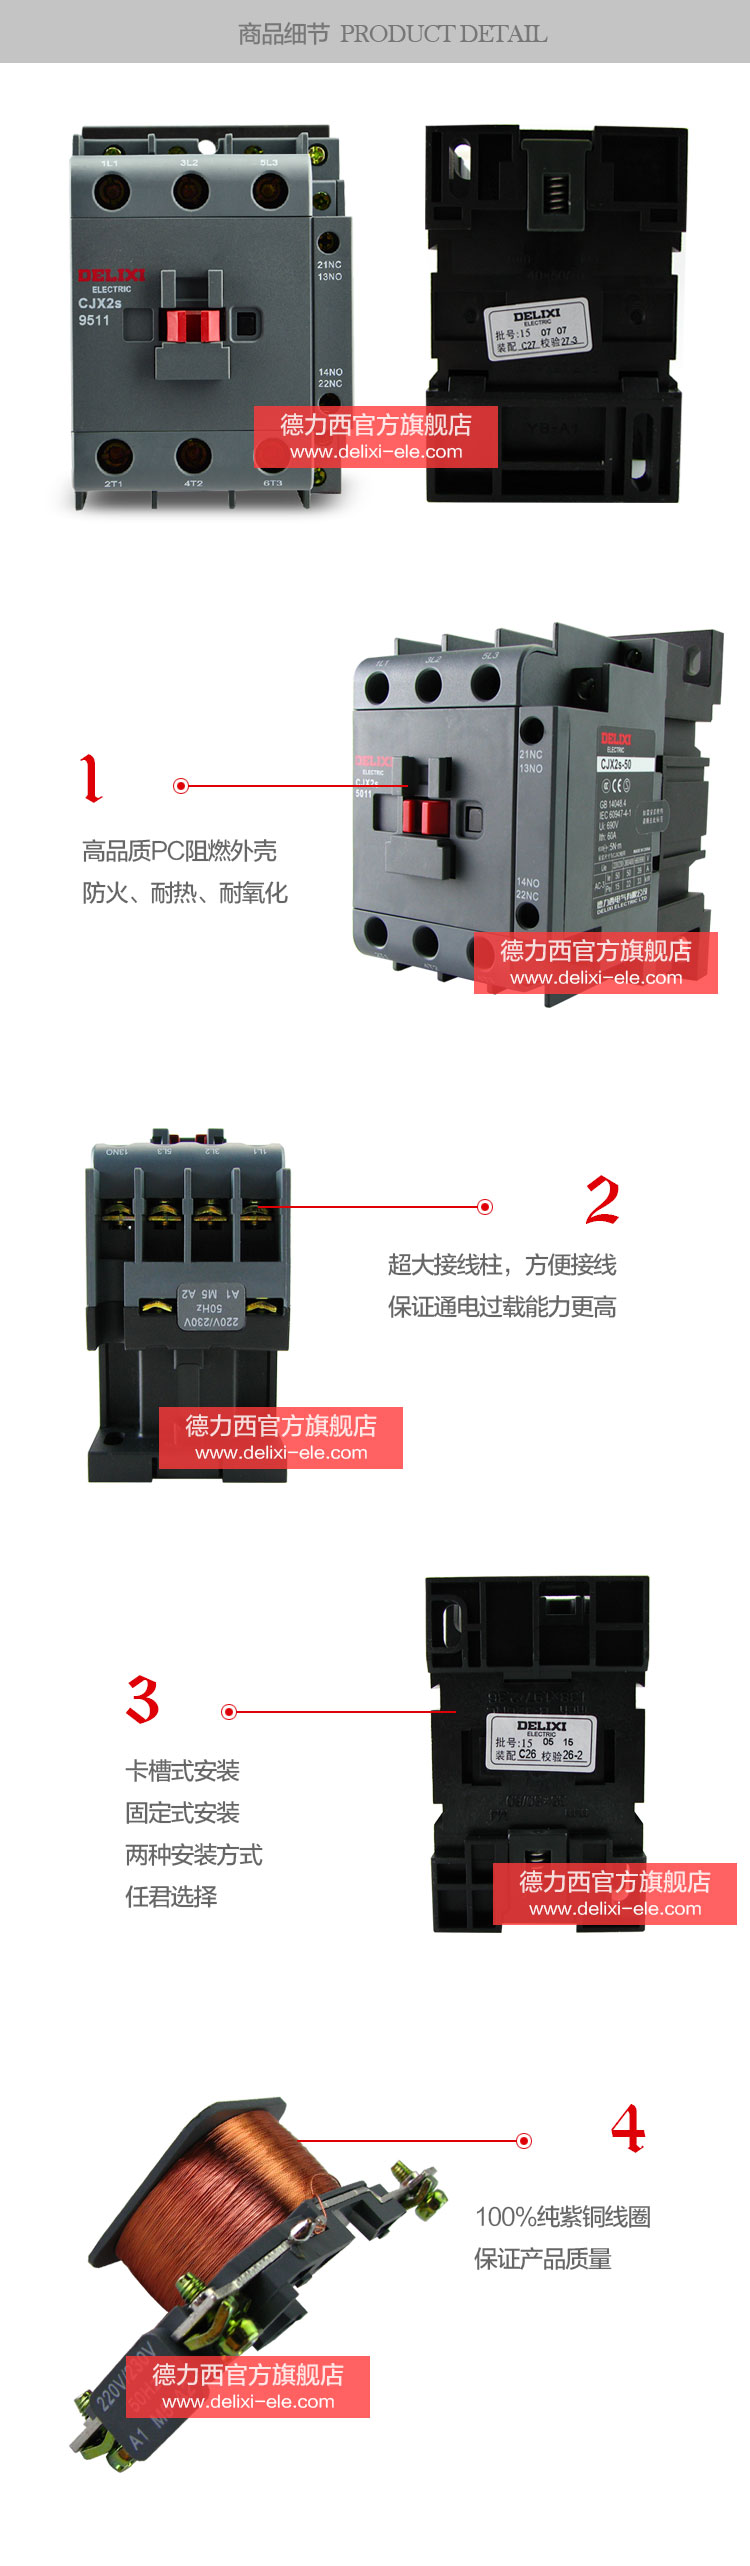 德力西交流接触器CJX2S-9511产品细节展示高品质阻燃材料，防火耐热耐氧化，超大接线柱卡槽式安装，100%纯紫铜线圈